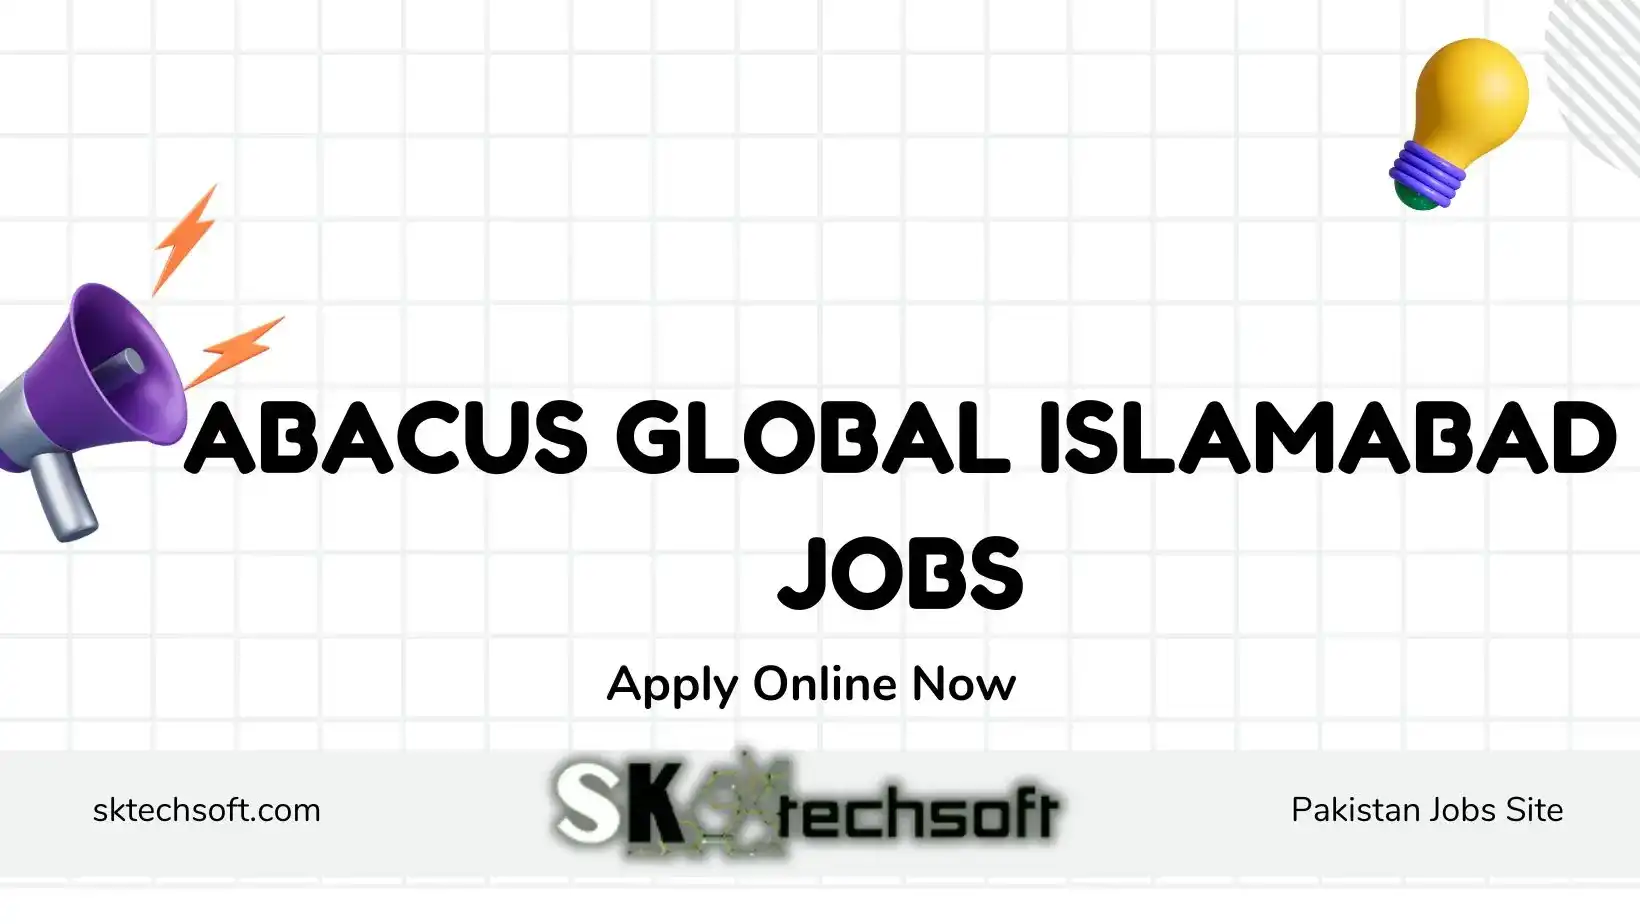 Abacus Global Islamabad Jobs